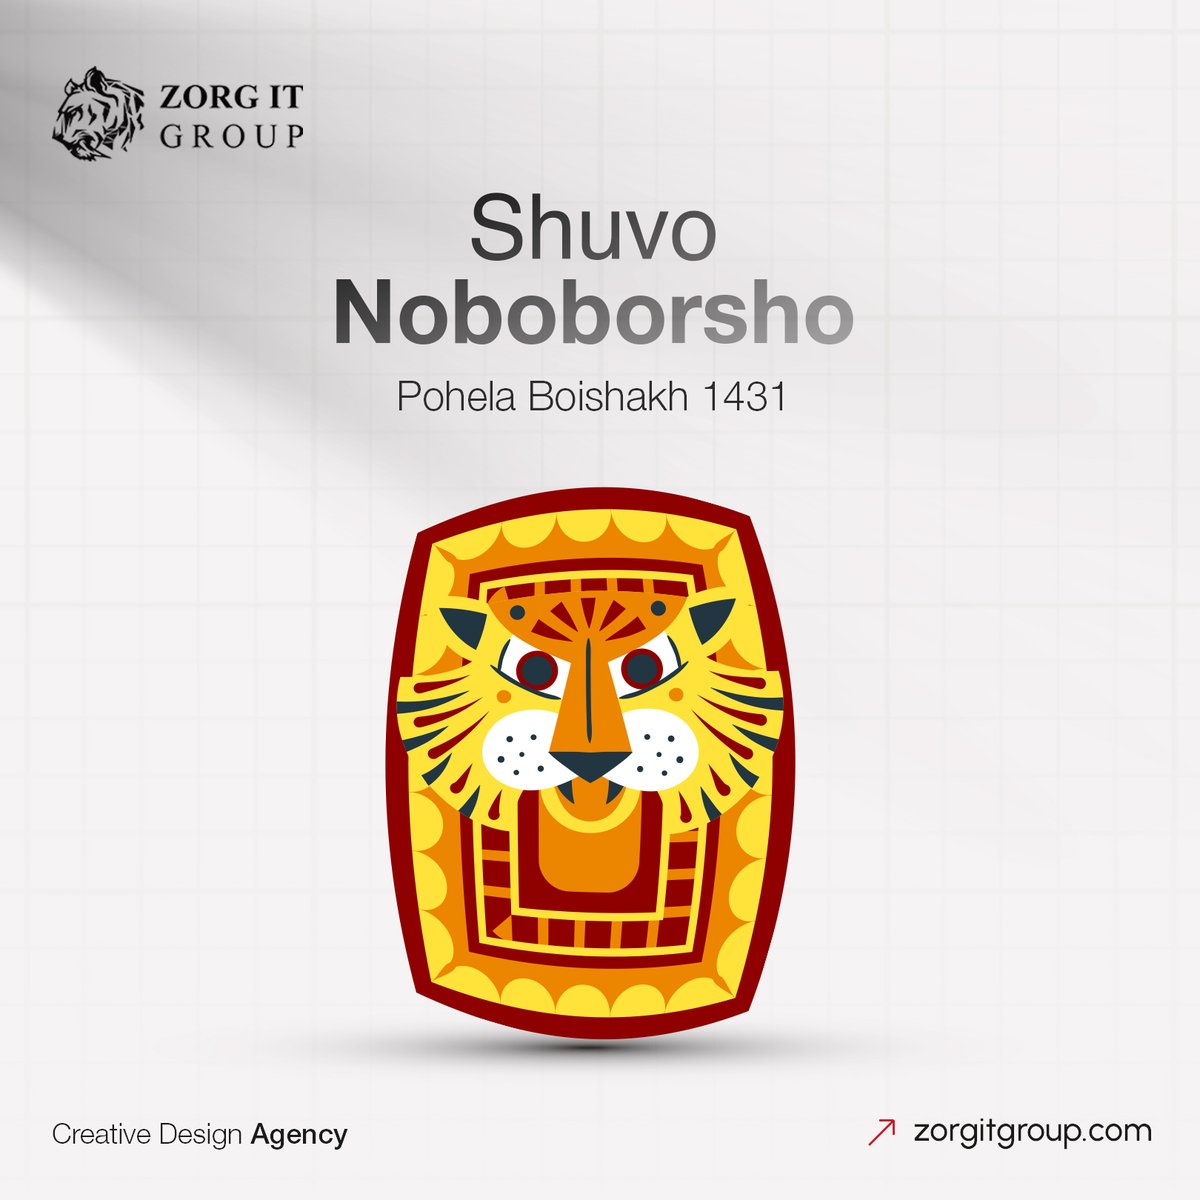 Shubho Noboborsho!
May the coming year be peaceful for all.

#ShubhoNoboborsho #pohelaboishak #zorg #zorgitgroup